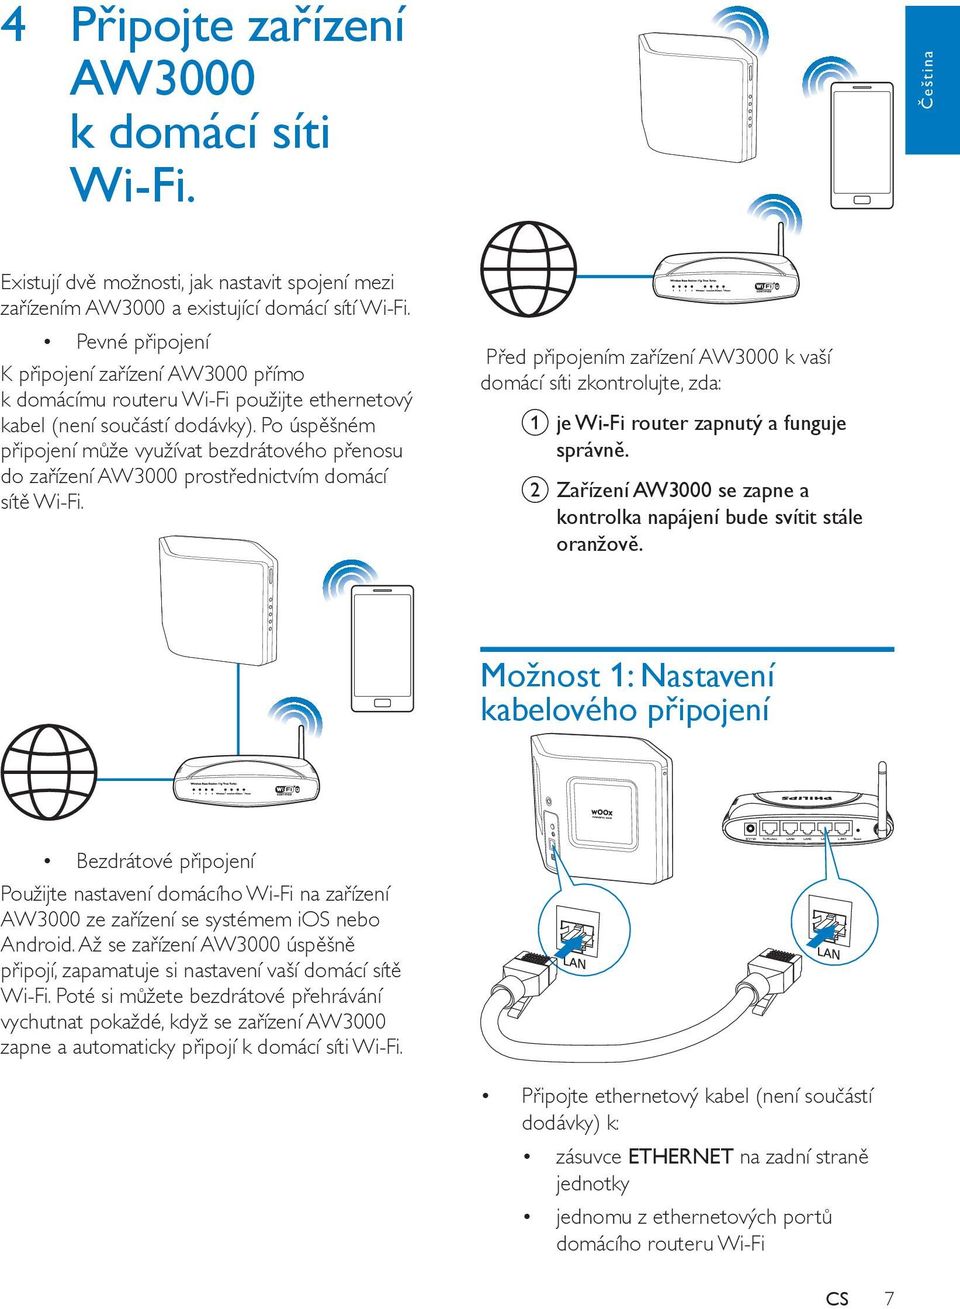 Po úspěšném připojení může využívat bezdrátového přenosu do zařízení AW3000 prostřednictvím domácí sítě Wi-Fi.